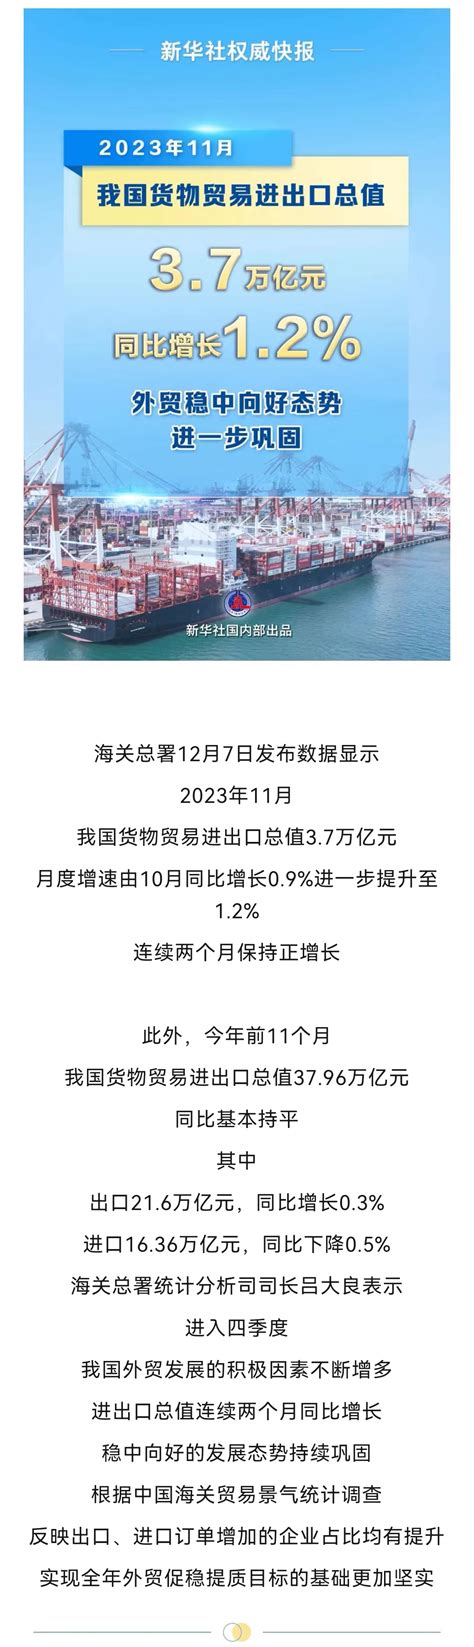 济宁市商务局 跨境贸易 11月我国外贸进出口同比增长1.2%